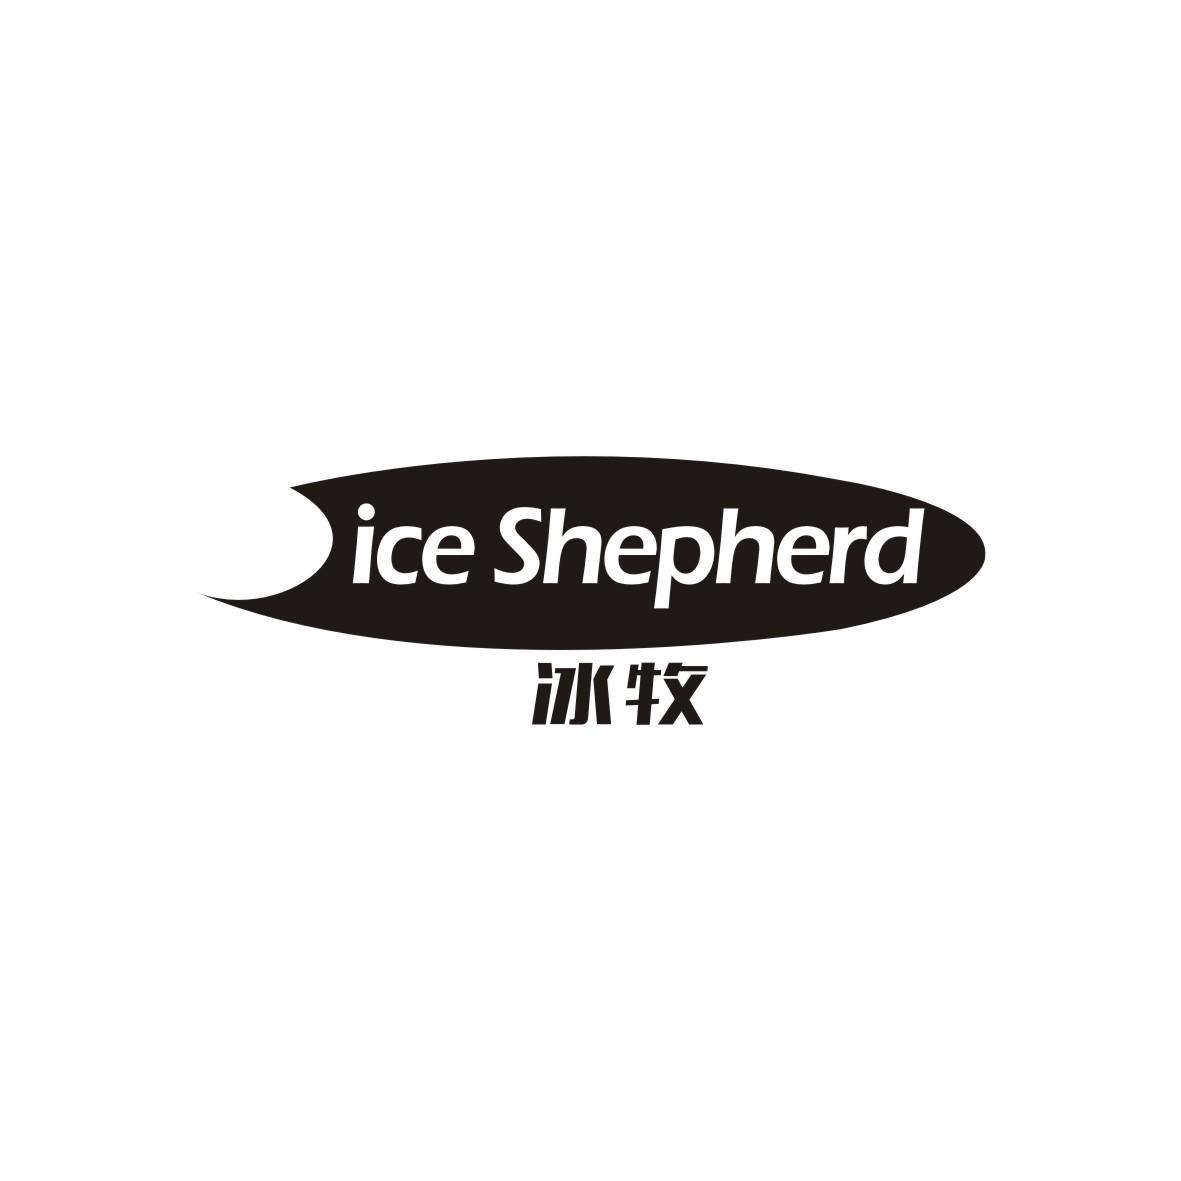   ICE SHEPHERD